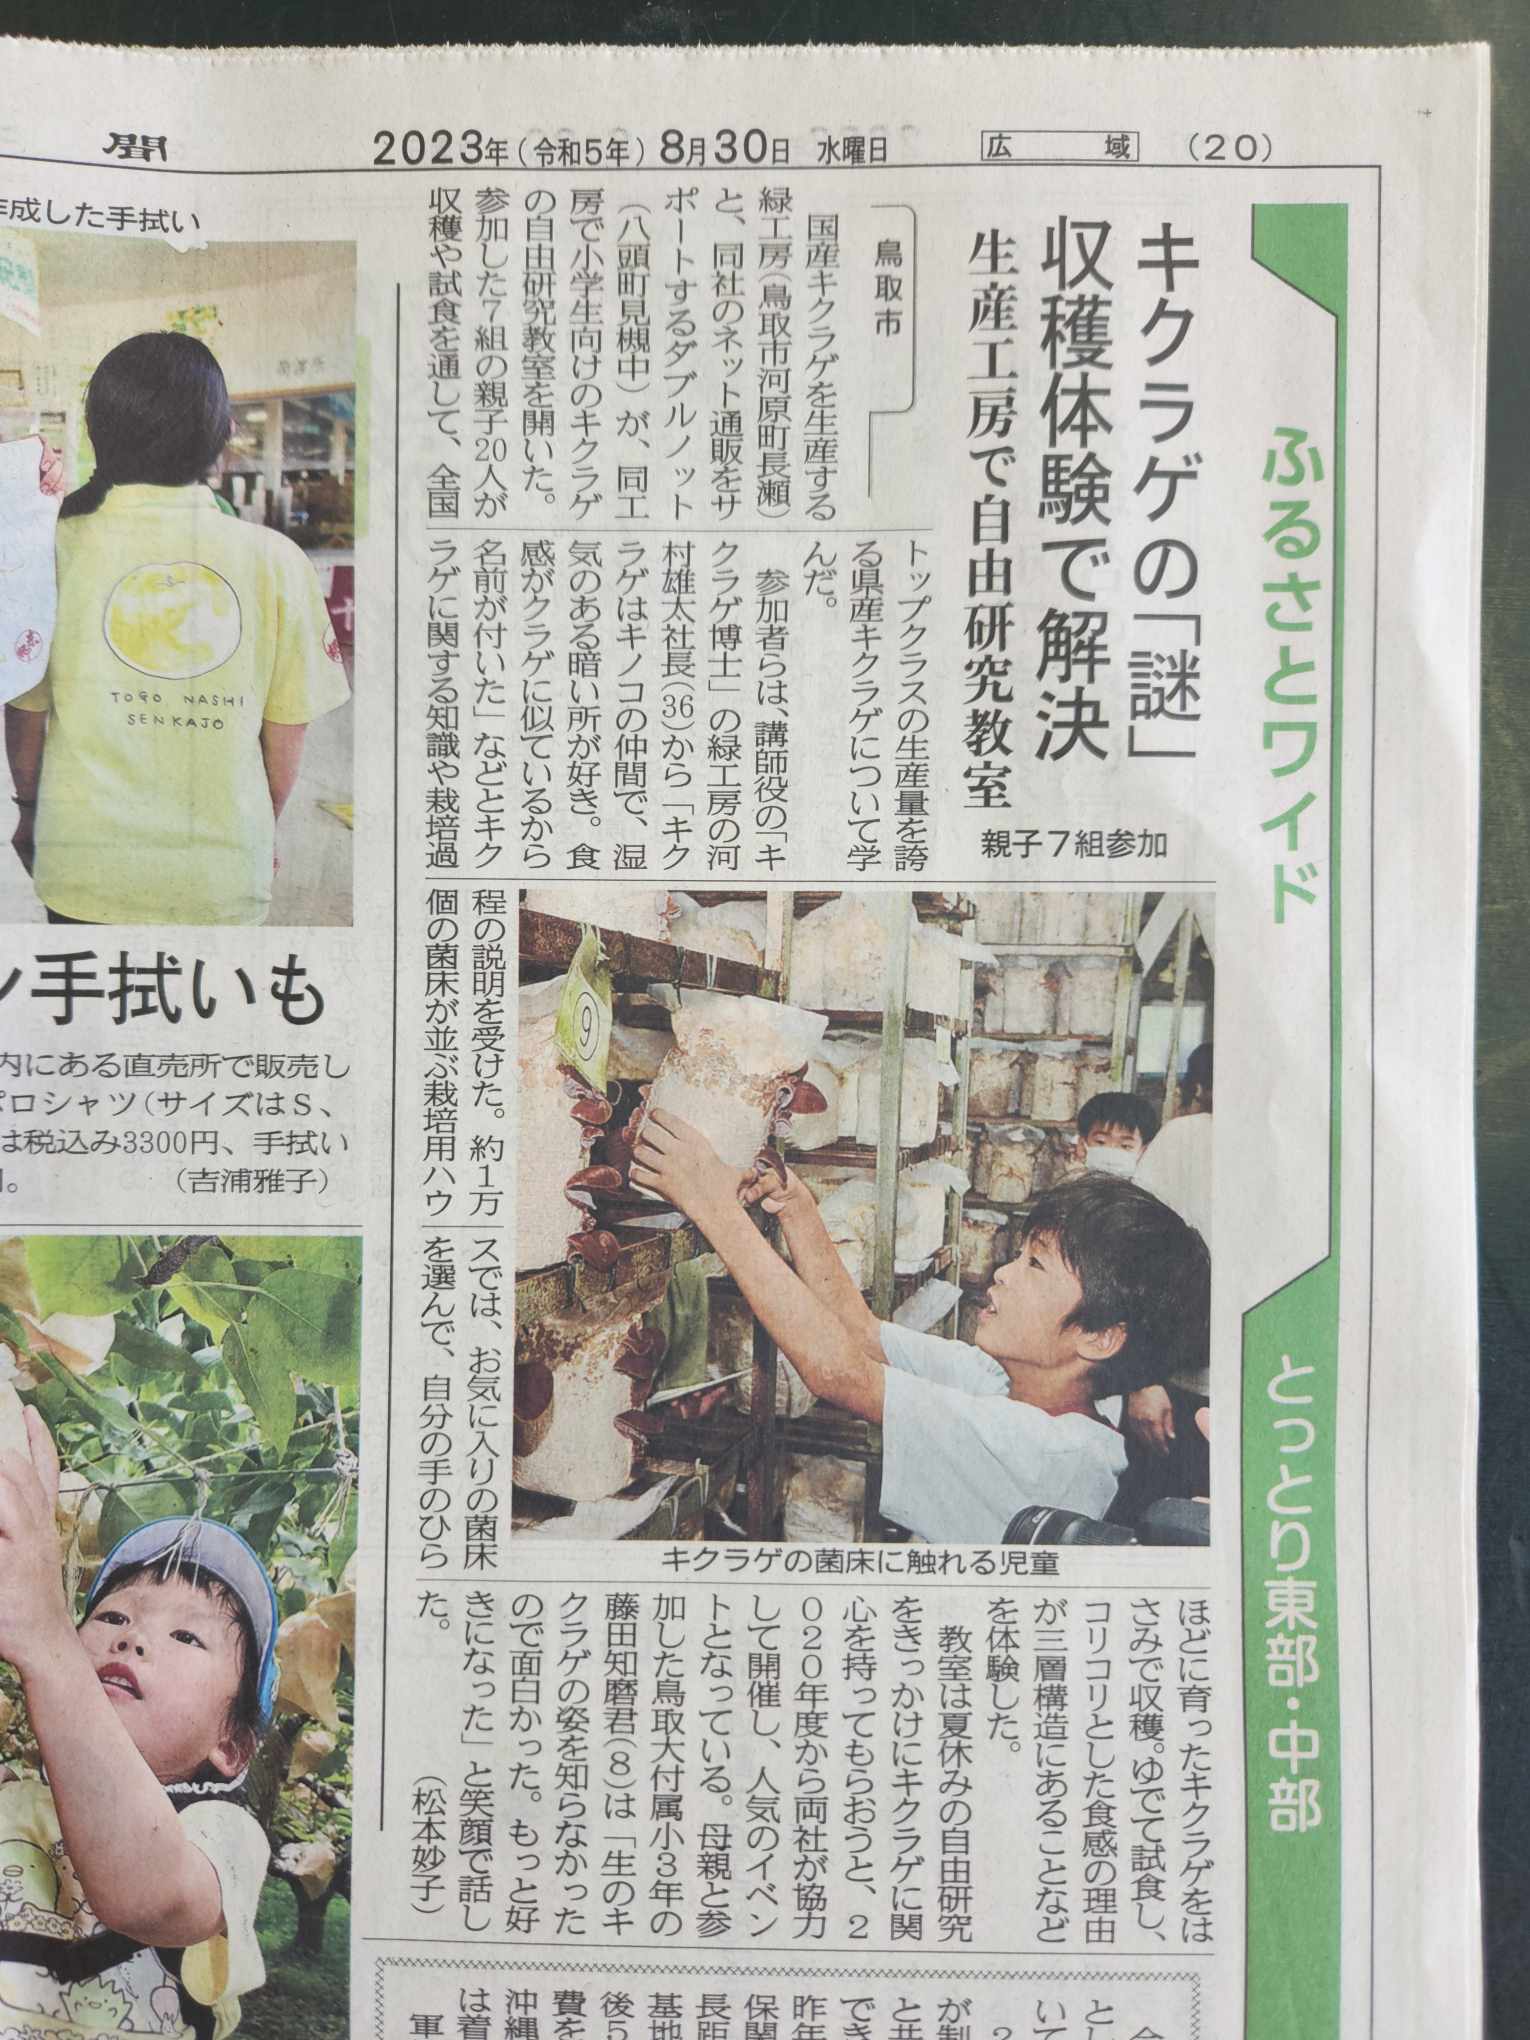 きくらげ自由研究イベントを日本海新聞にて取り上げていただきました